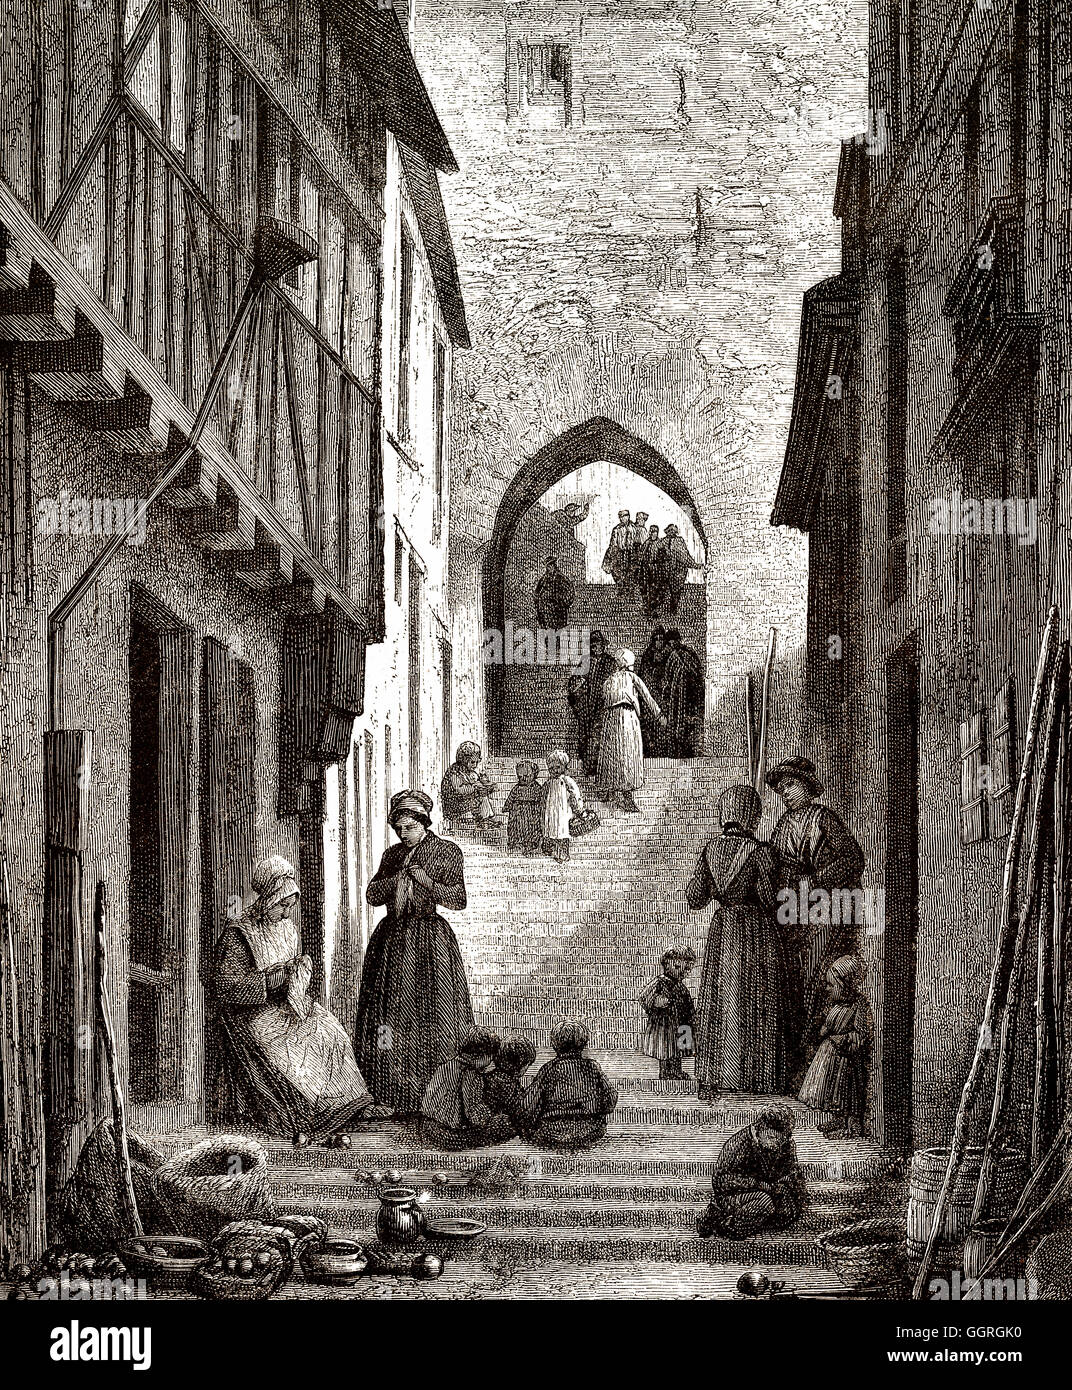 Escalier ancien : L'escalier de grande poterne, Le Mans, France, Europe, 18e siècle Banque D'Images